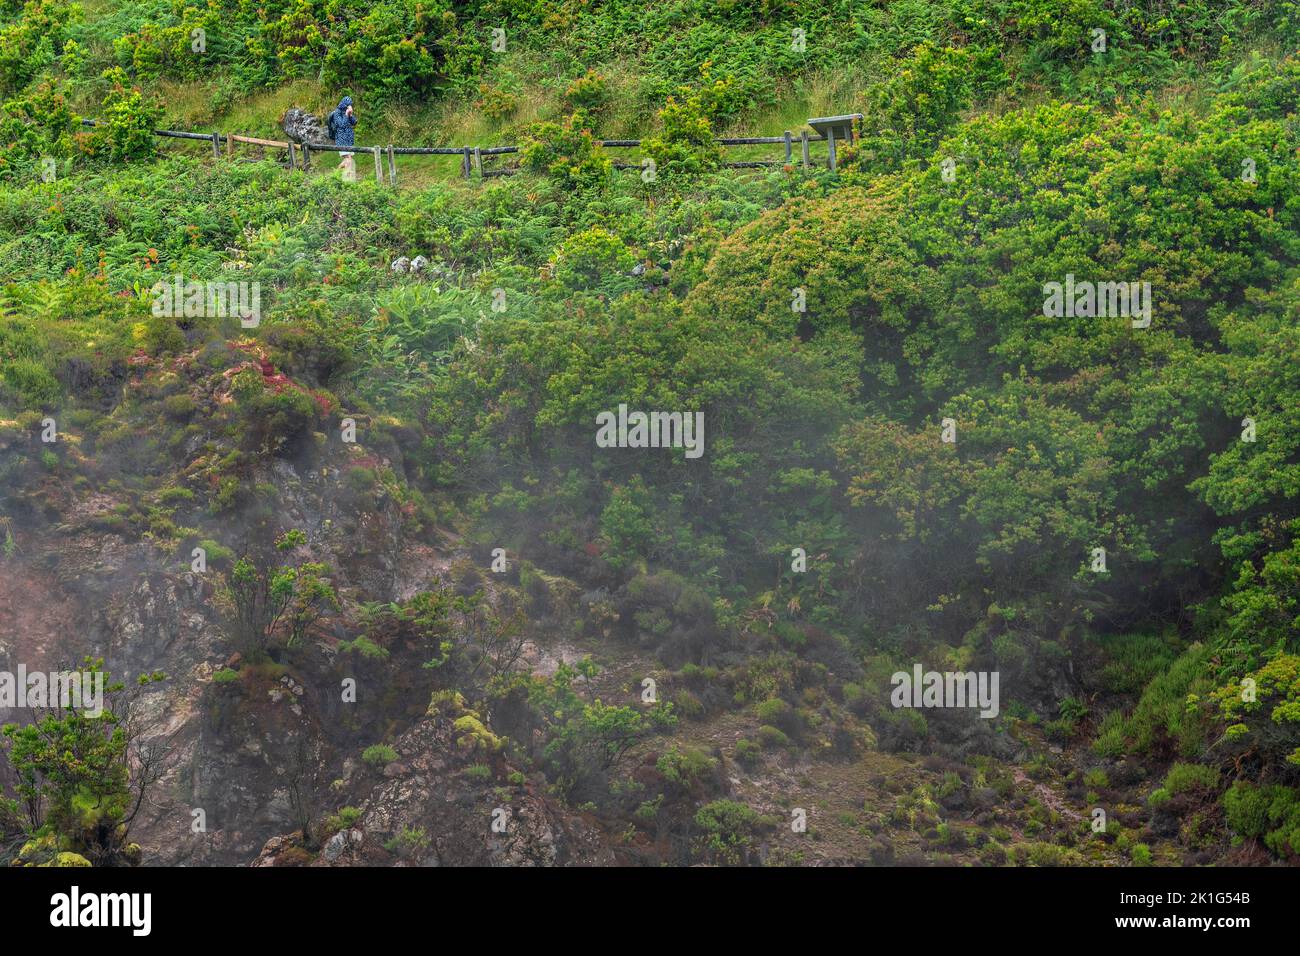 Los gases de dióxido de carbono y azufre se desprenden de fumarolas volcánicas en el parque natural Furnas do Enxofre en la isla de Terceira, Azores, Portugal. Las Azores albergan 26 volcanes activos, 8 de los cuales están bajo el agua. Foto de stock